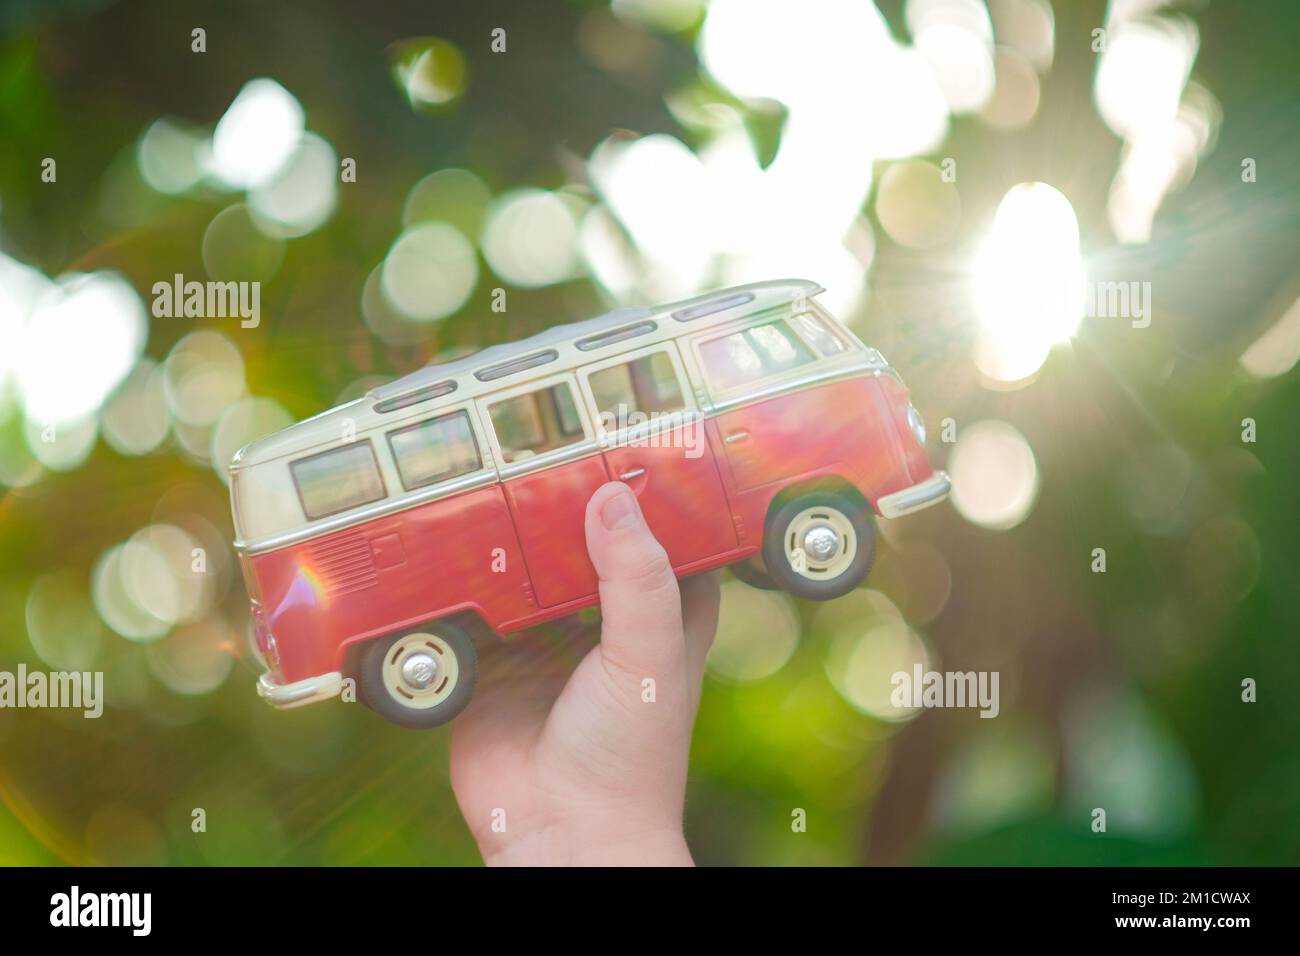 Die Hand eines kleinen Kindes hält einen roten Spielzeugwagen in Richtung Sonne. Grüner Hintergrund für den Außenbereich. Horizontaler Roadtrip, Reiseziele, Sommerurlaubskonzept. Stockfoto